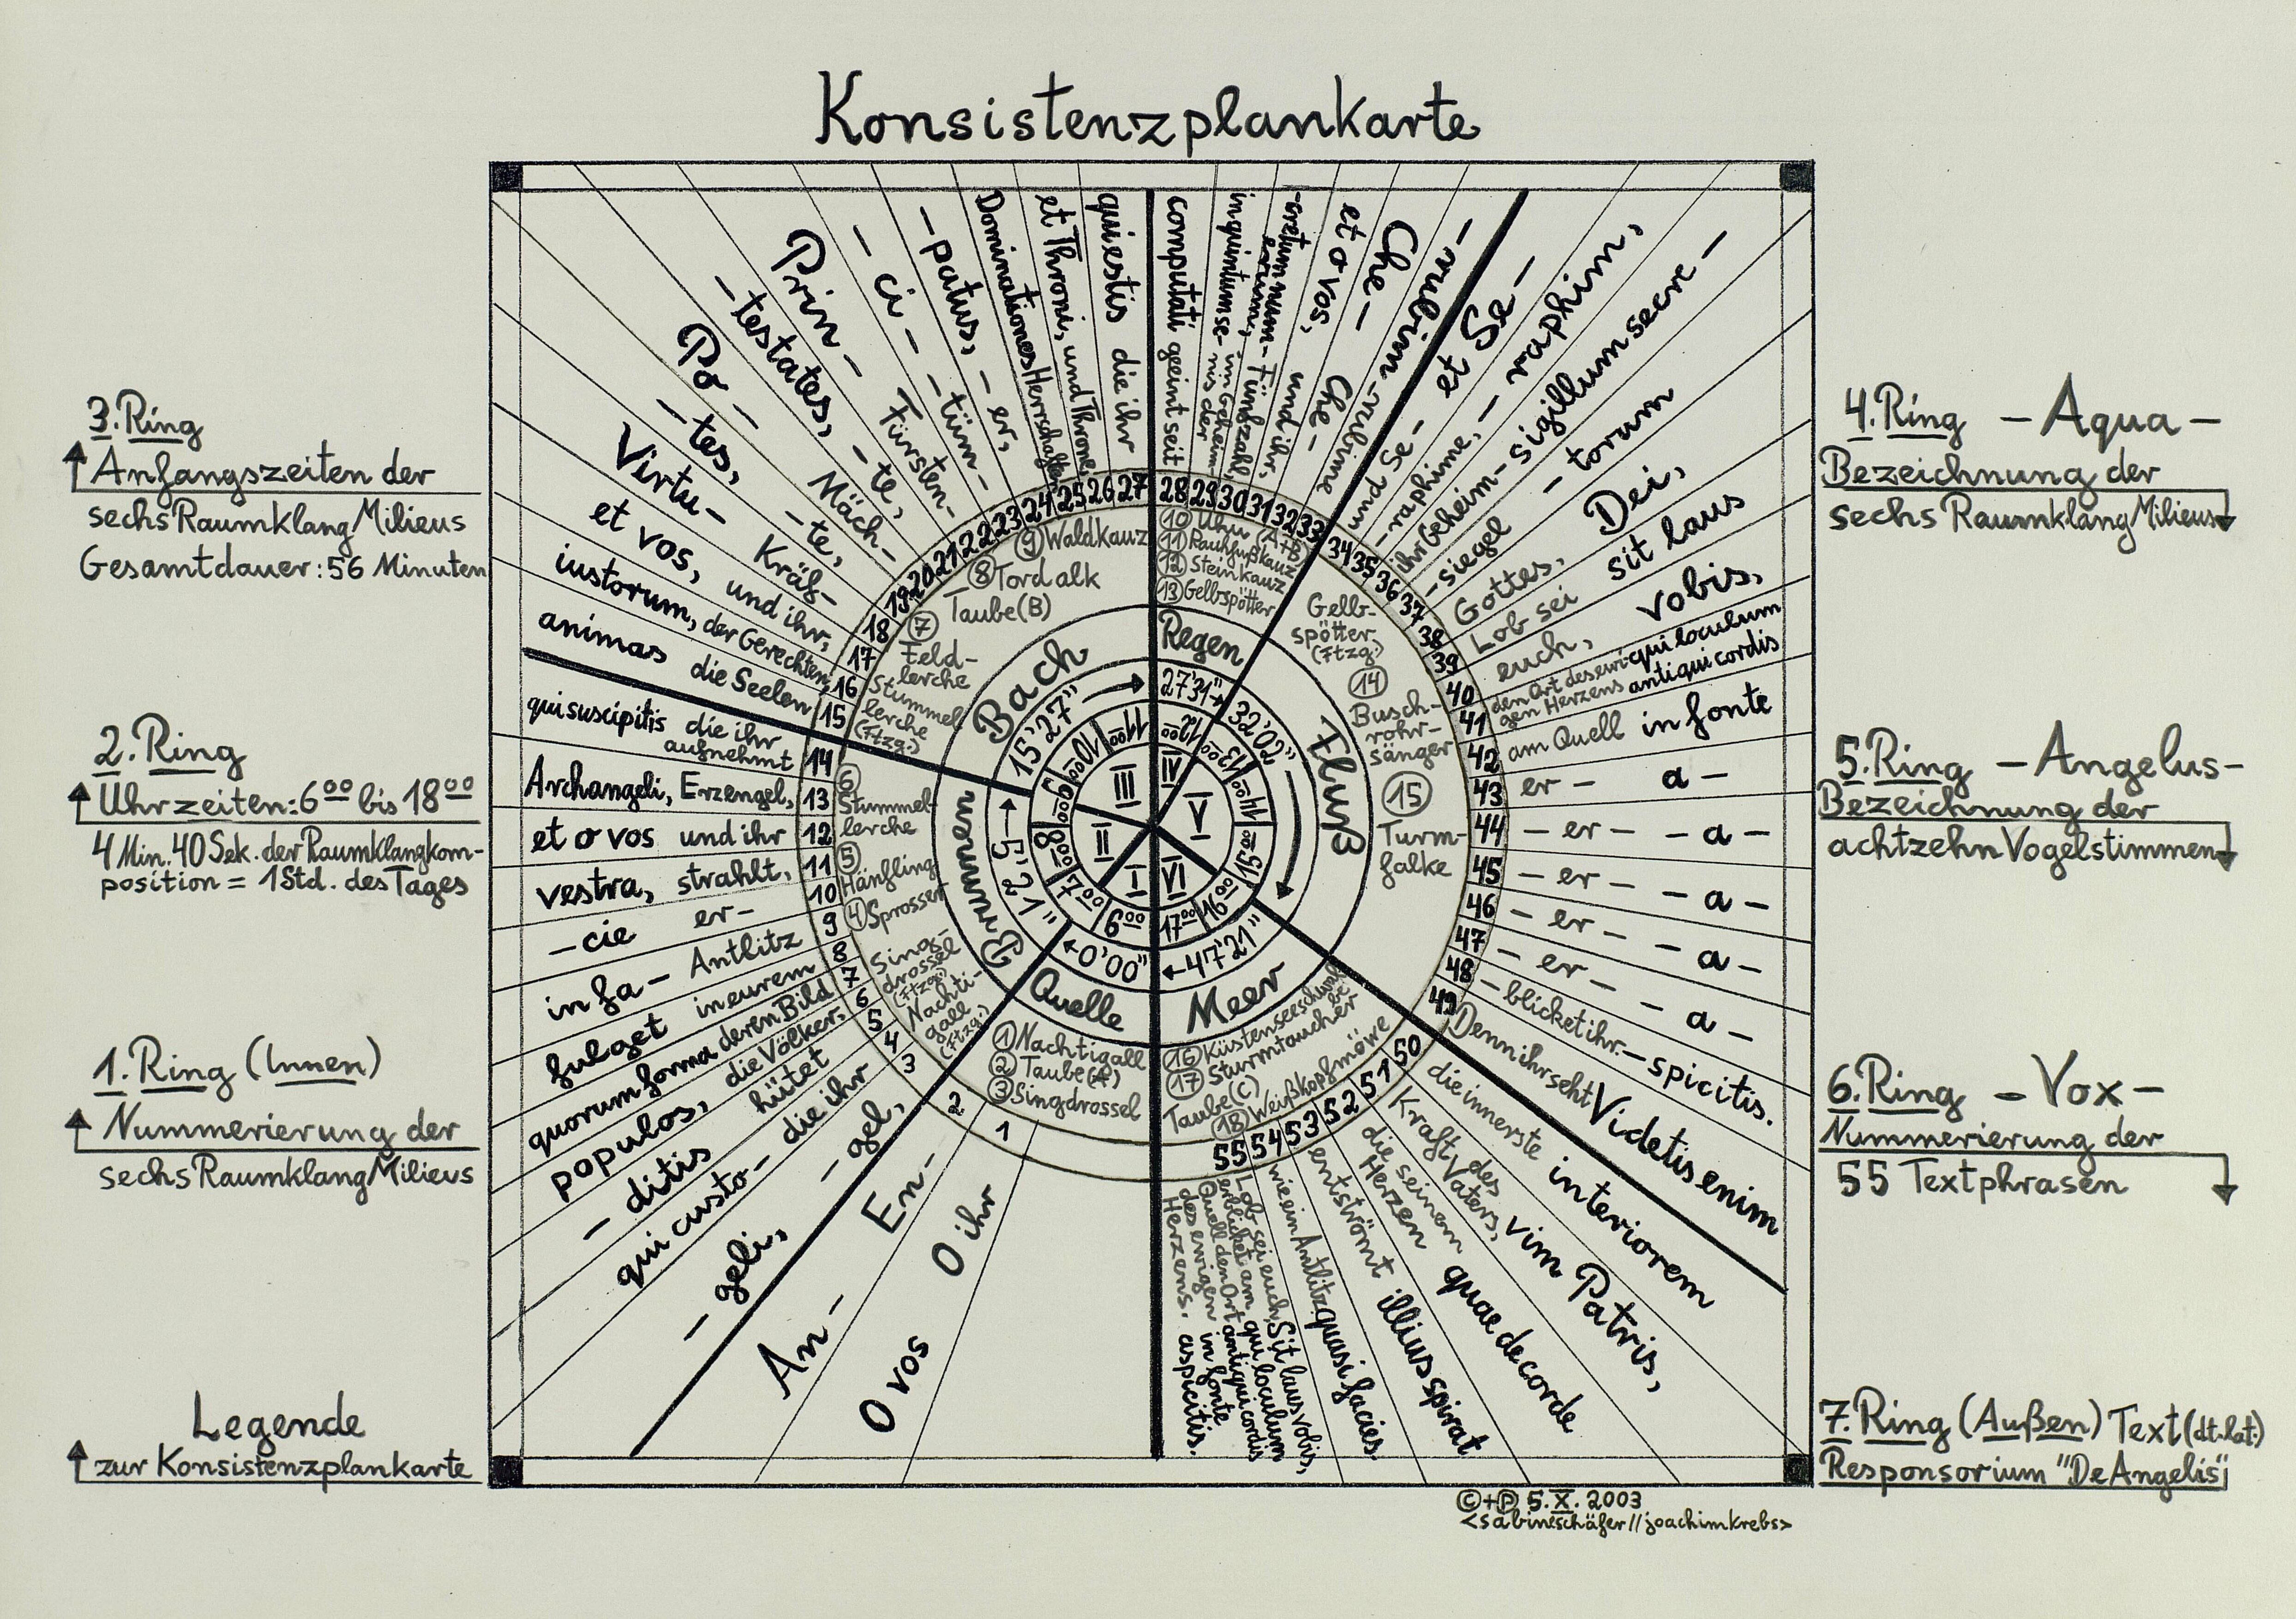 AquaAngelusVox, "Konsistenzplankarte" grafische Partitur zur Komposition, Handschrift Joachim Krebs